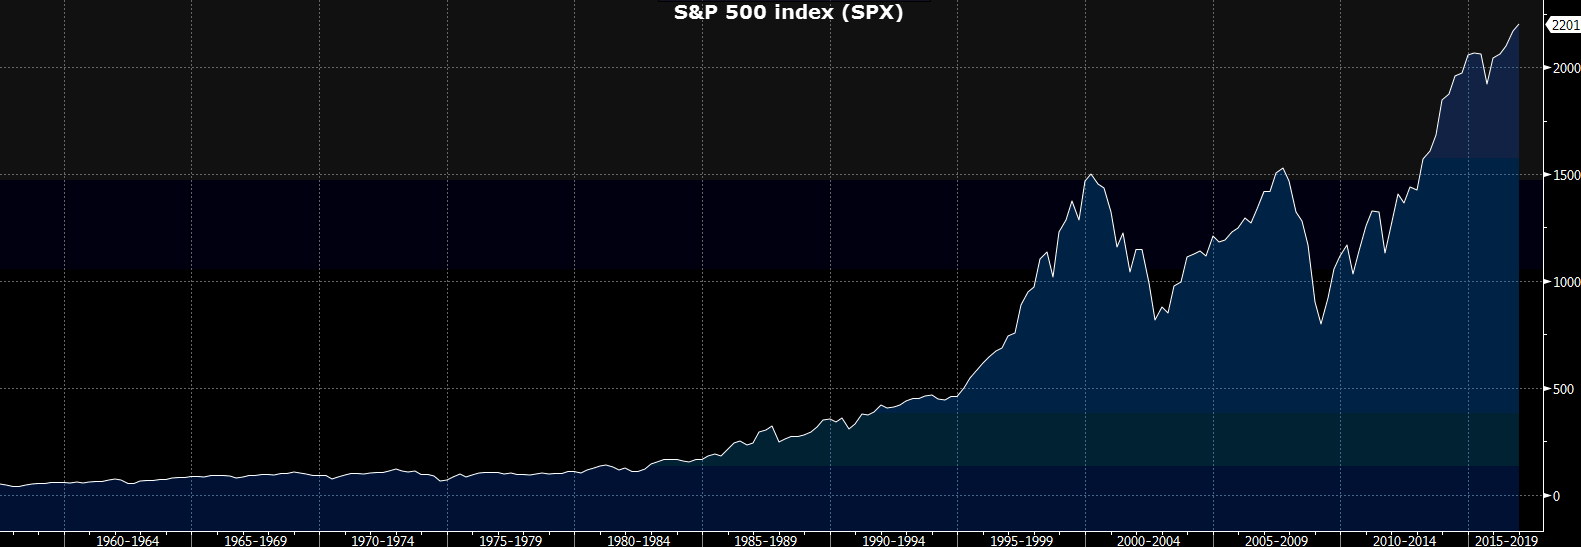 sp-500-index-1960-2019-1